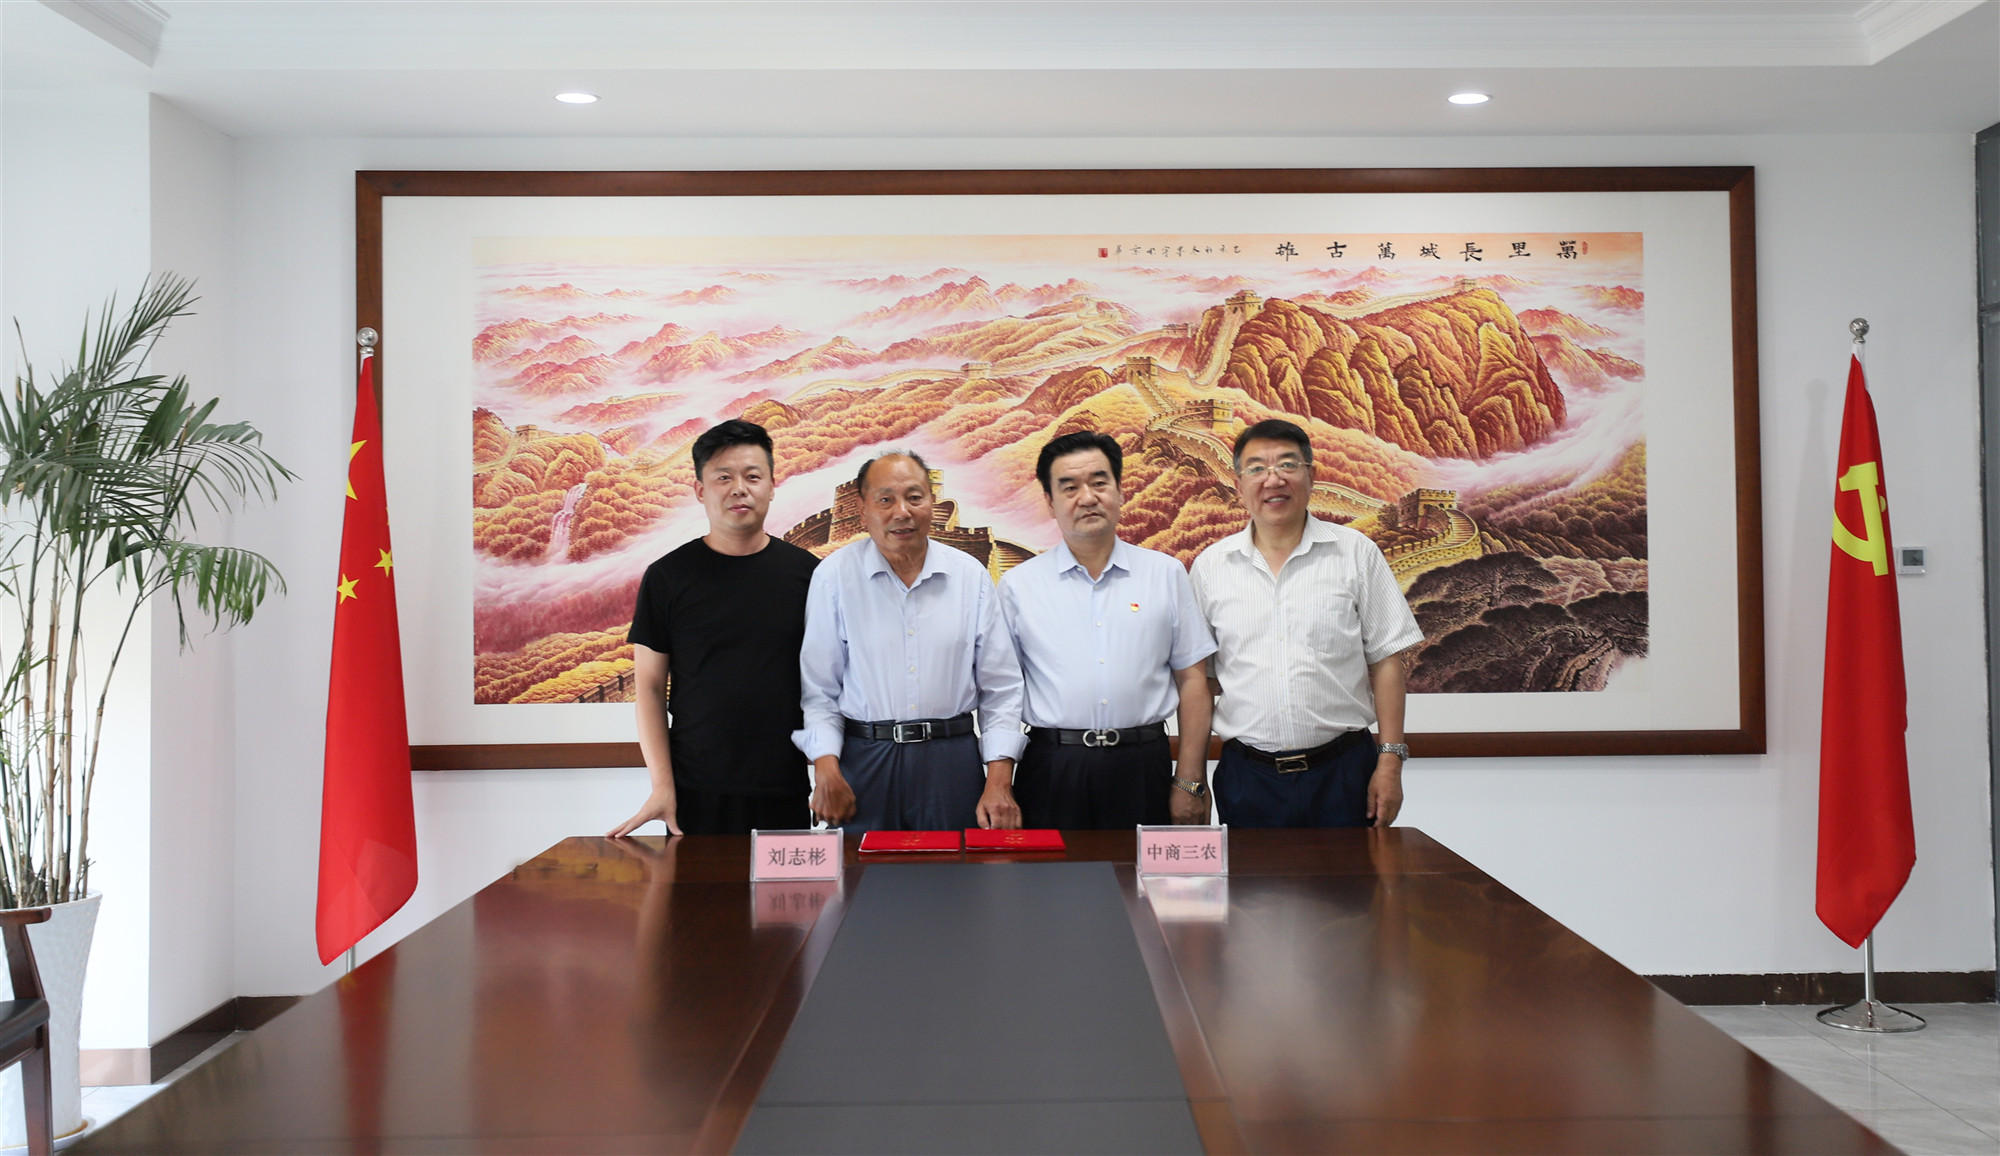 茂隆三农科技有限公司与国家级多胚孪生育种专家刘志彬教授签署战略合作协议(图4)